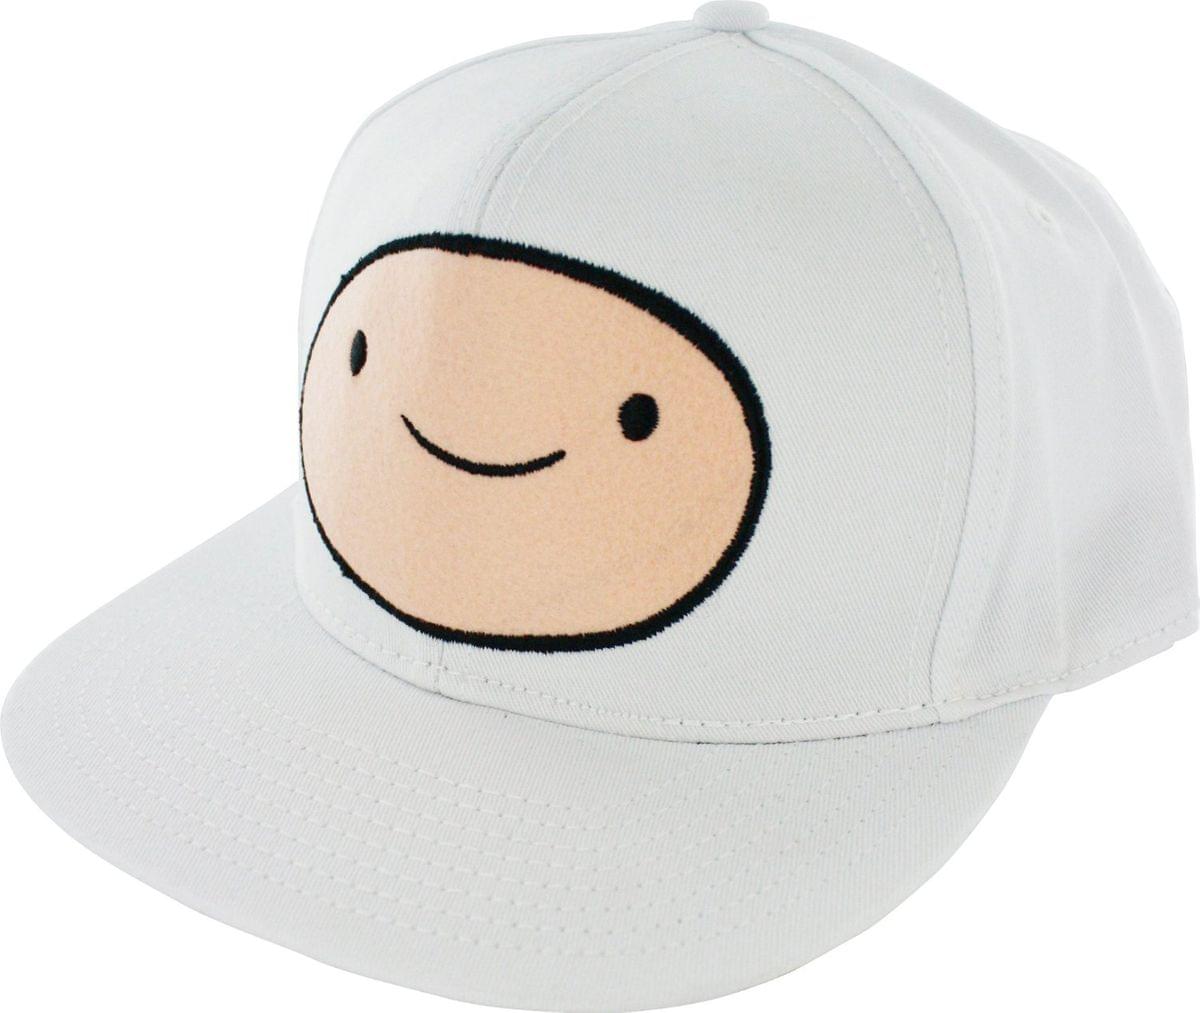 Adventure Time Men's Snapback Cap: Finn White